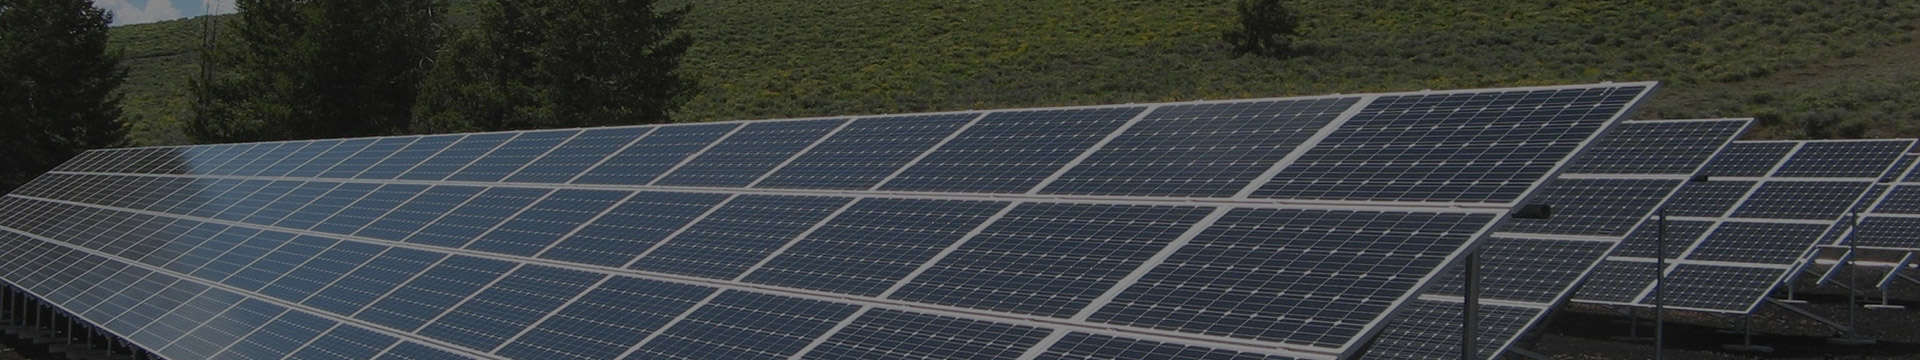 525-550 Watt Solar Panel